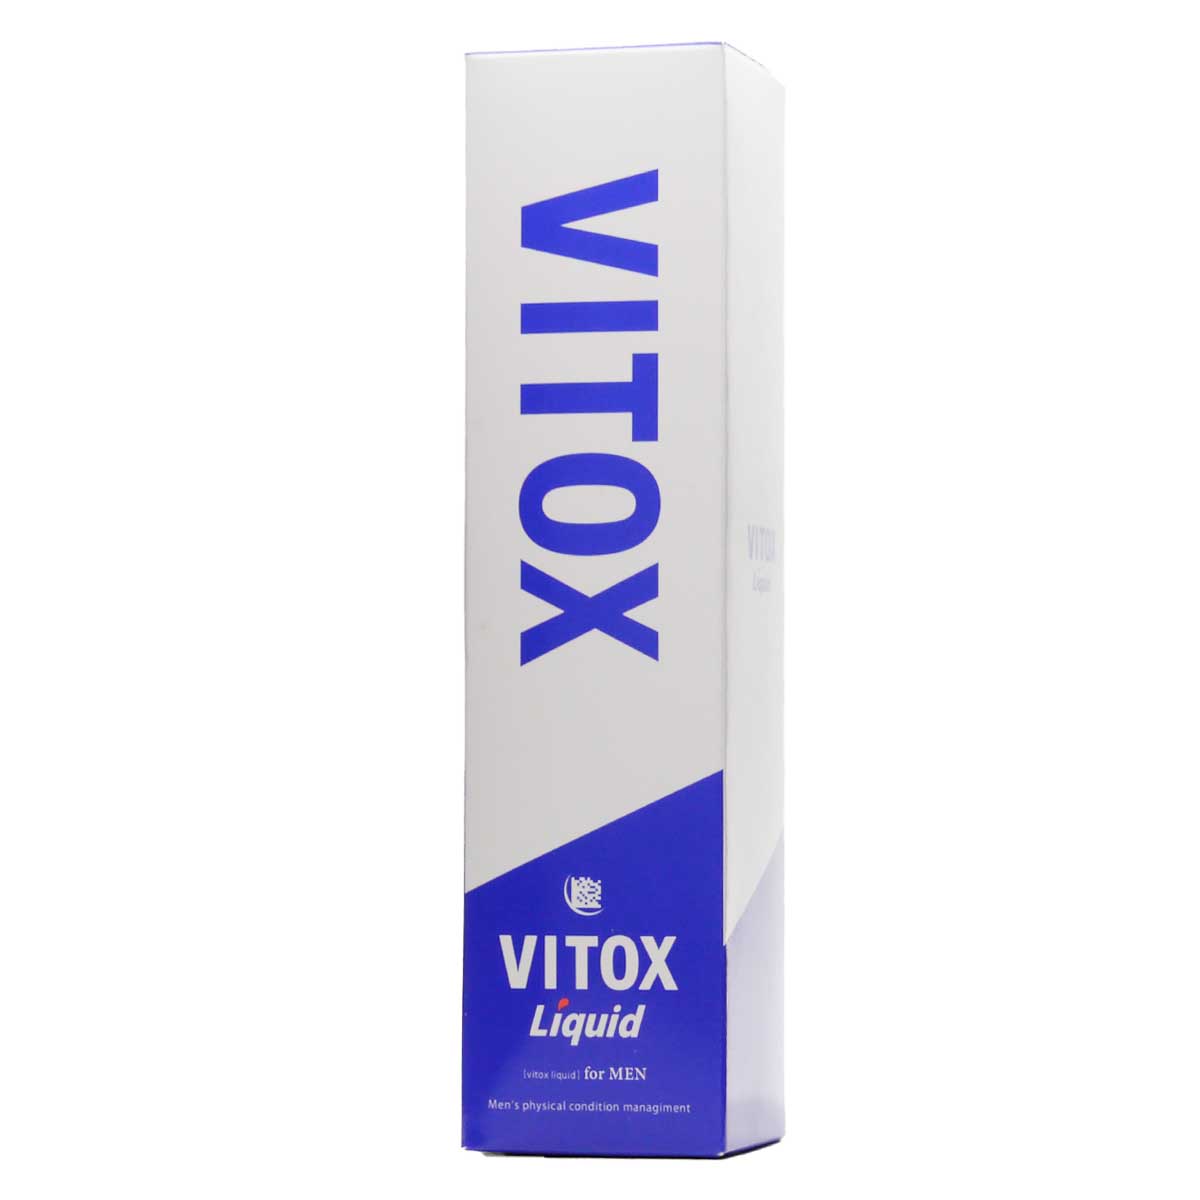 2本セット 】 ヴィトックス リキッド vitox liquid 120ml ( 約1ヵ月分